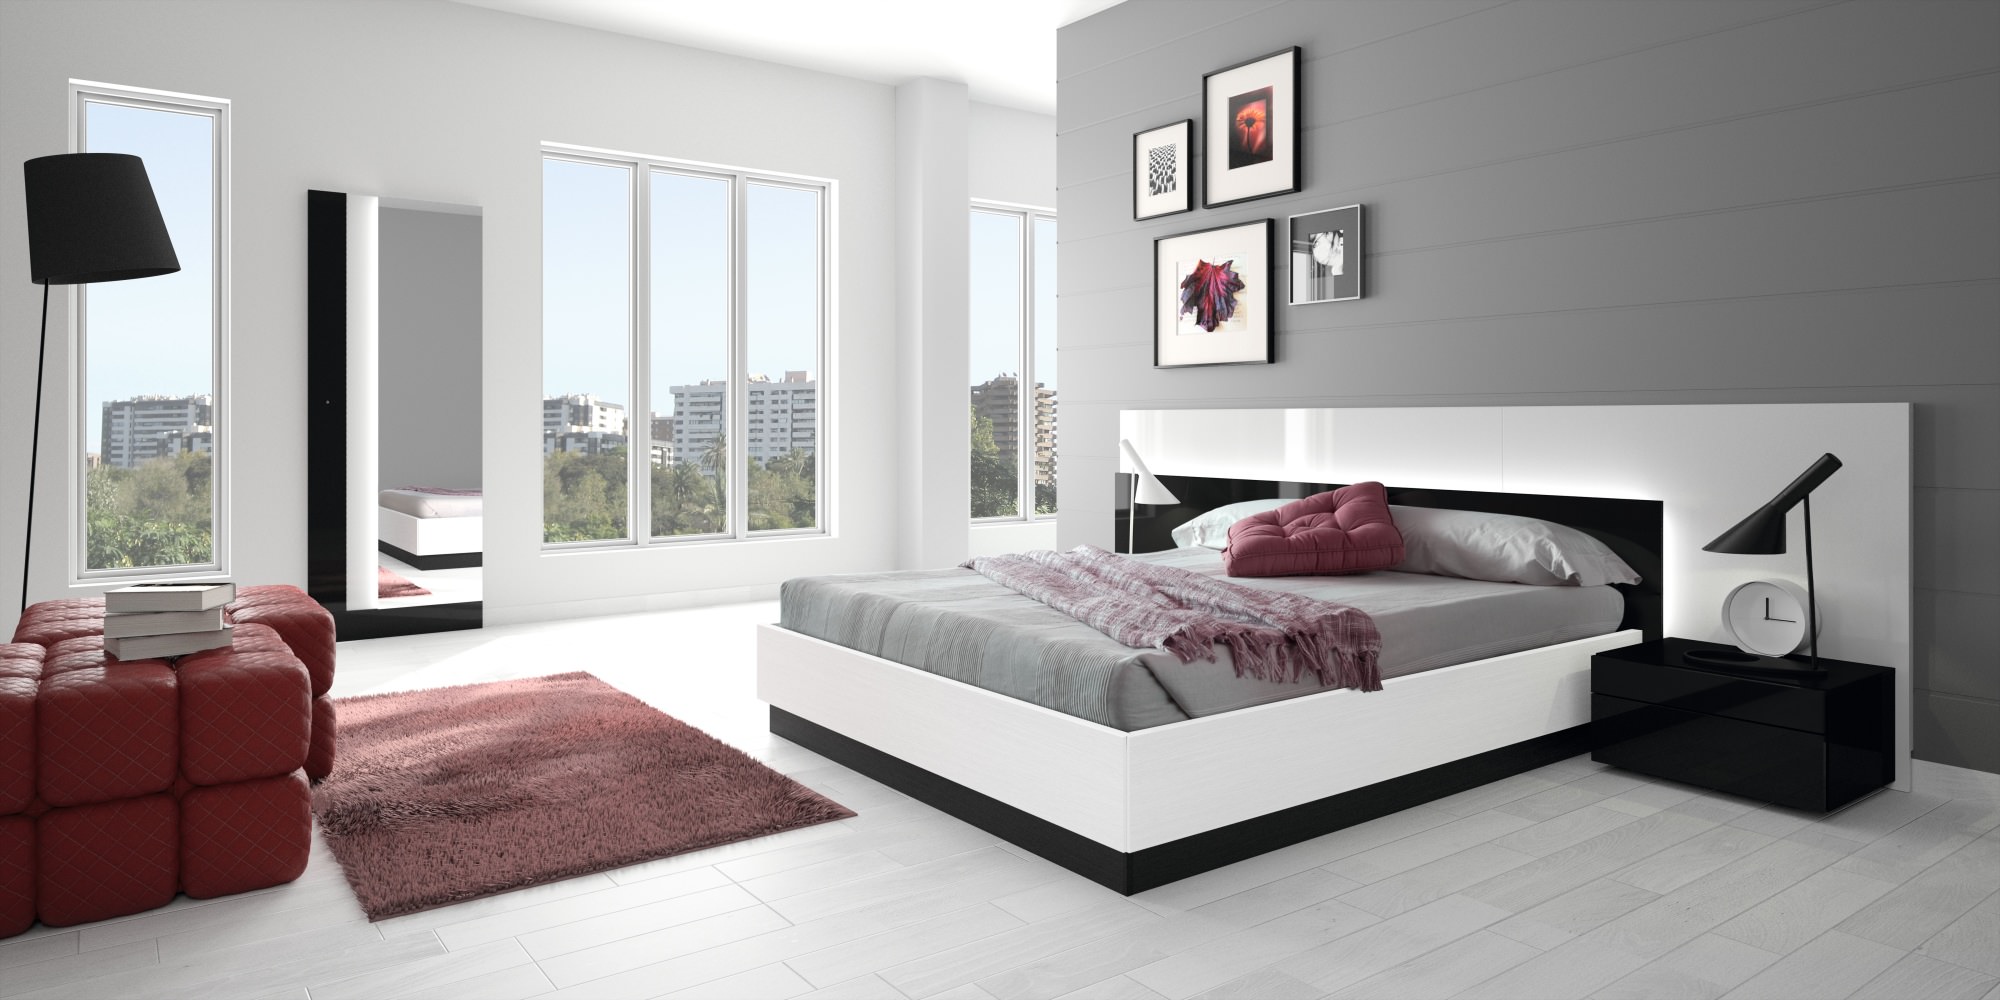 Красная и черно-белая мебель для спальни в стиле модерн